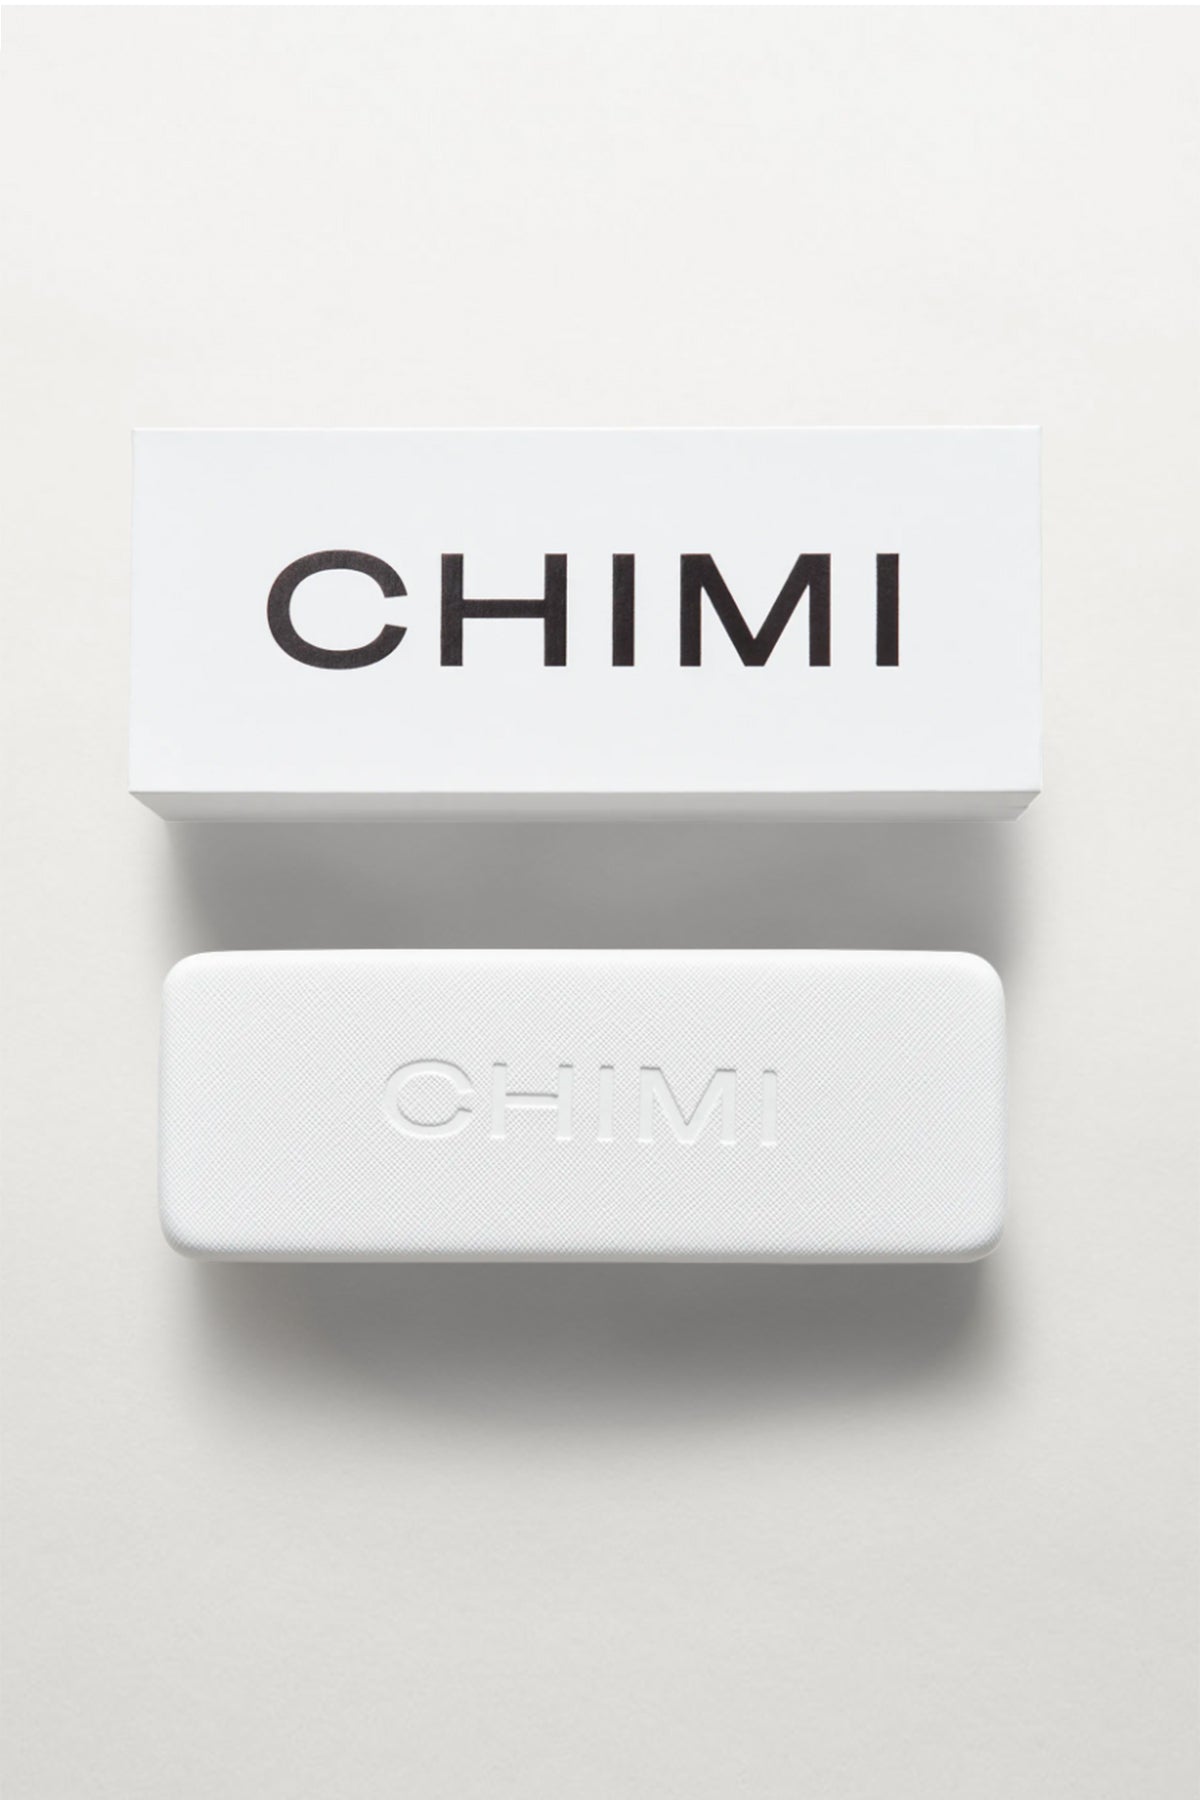 Chimi Sunglasses Case and Box-22132441546945